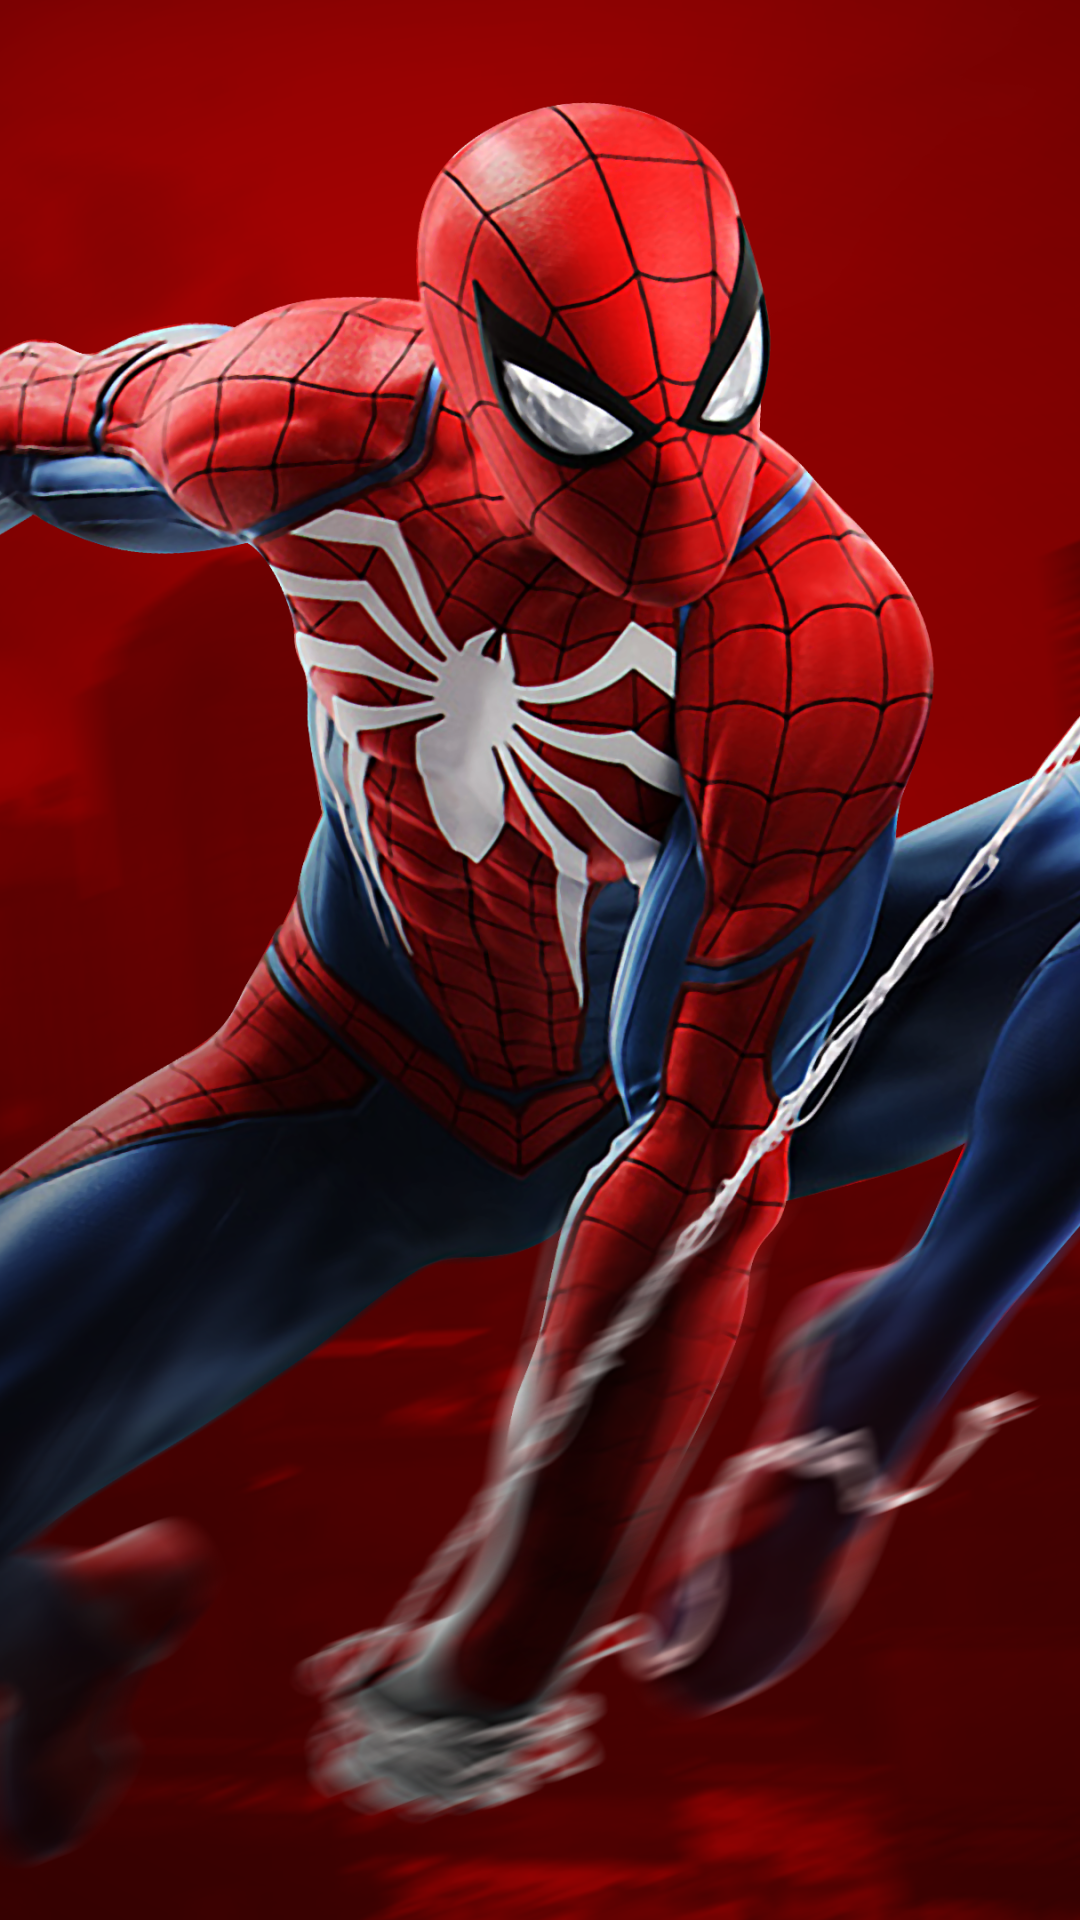 Spiderman Wallpaper 4k For Mobile - 1080x1920 Wallpaper - teahub.io